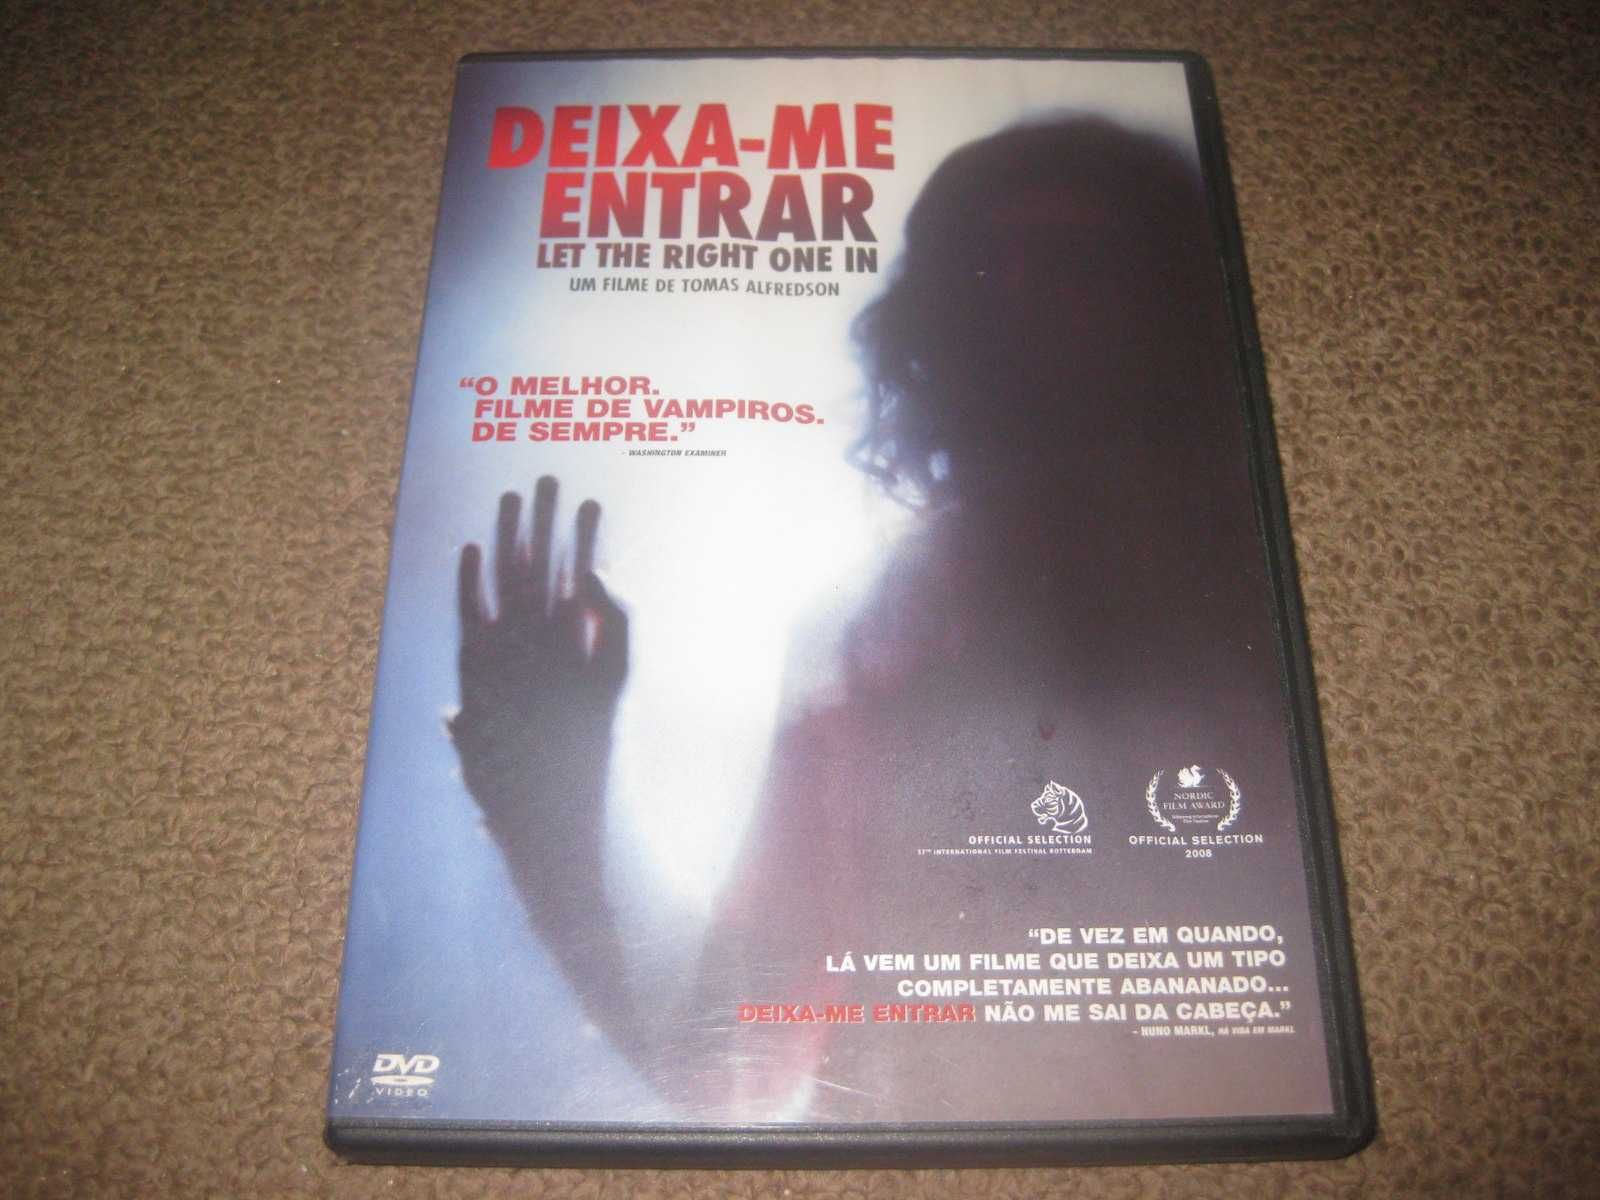 DVD "Deixa-me Entrar" de Tomas Alfredson